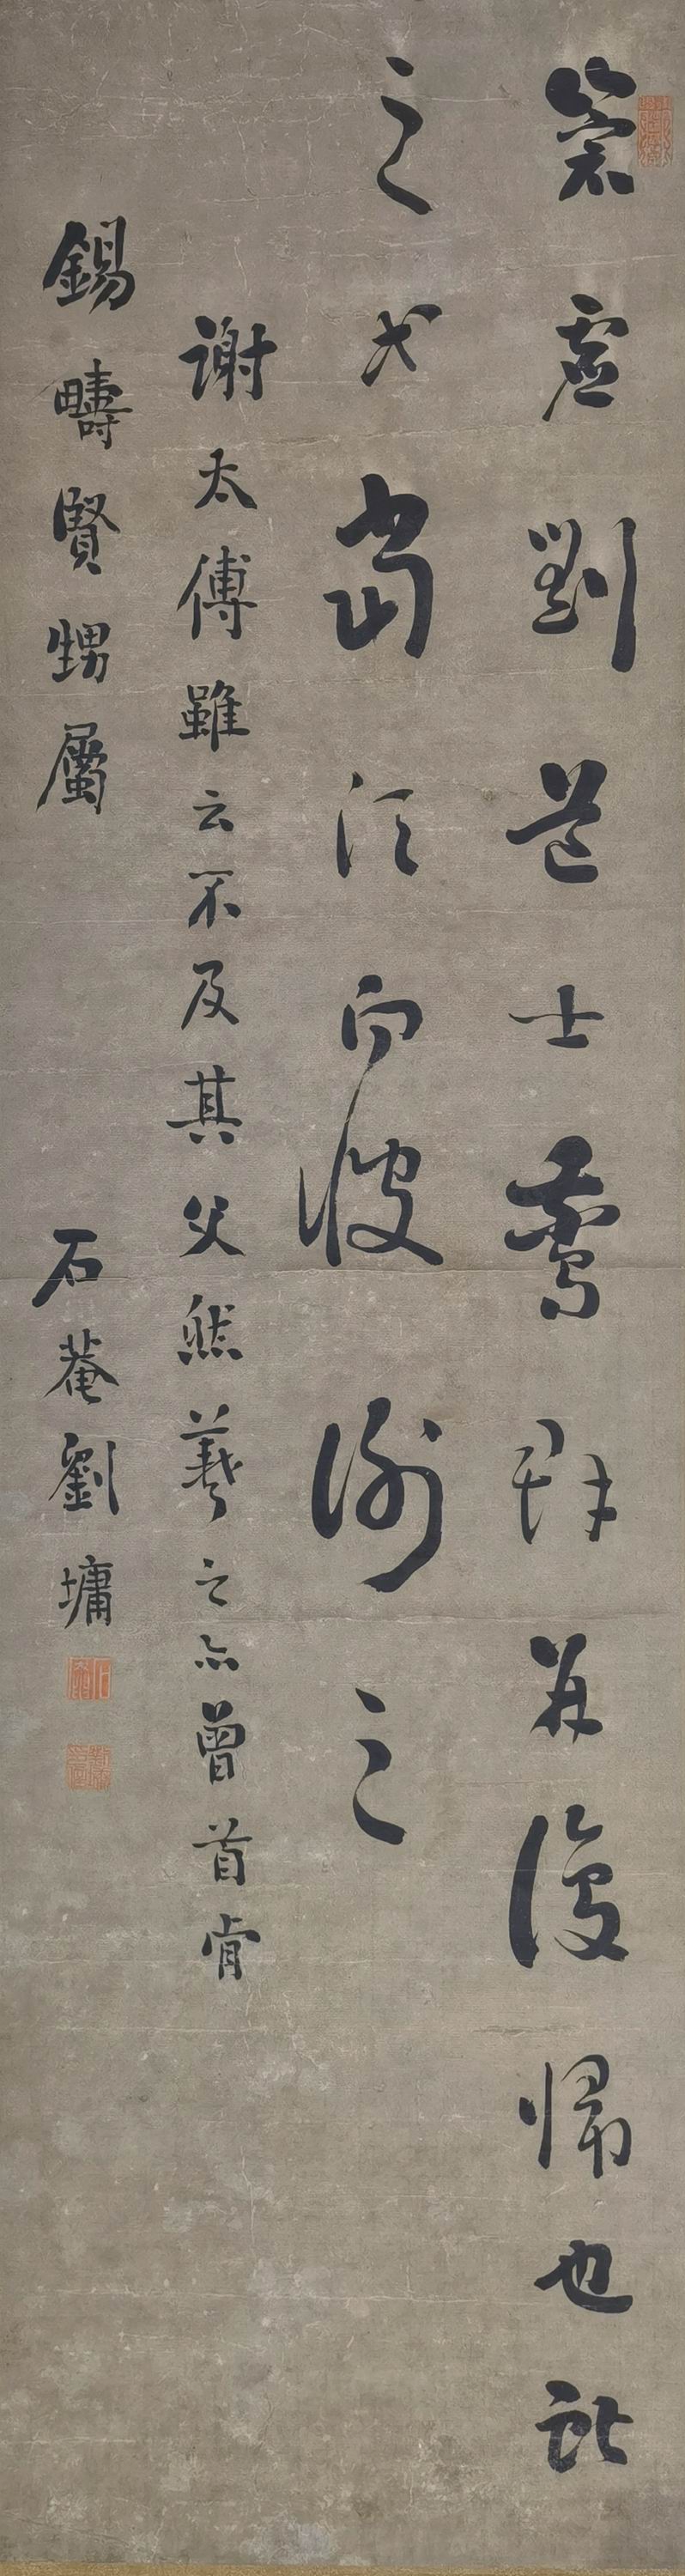 a刘墉-7-8（127-35原轴.jpg